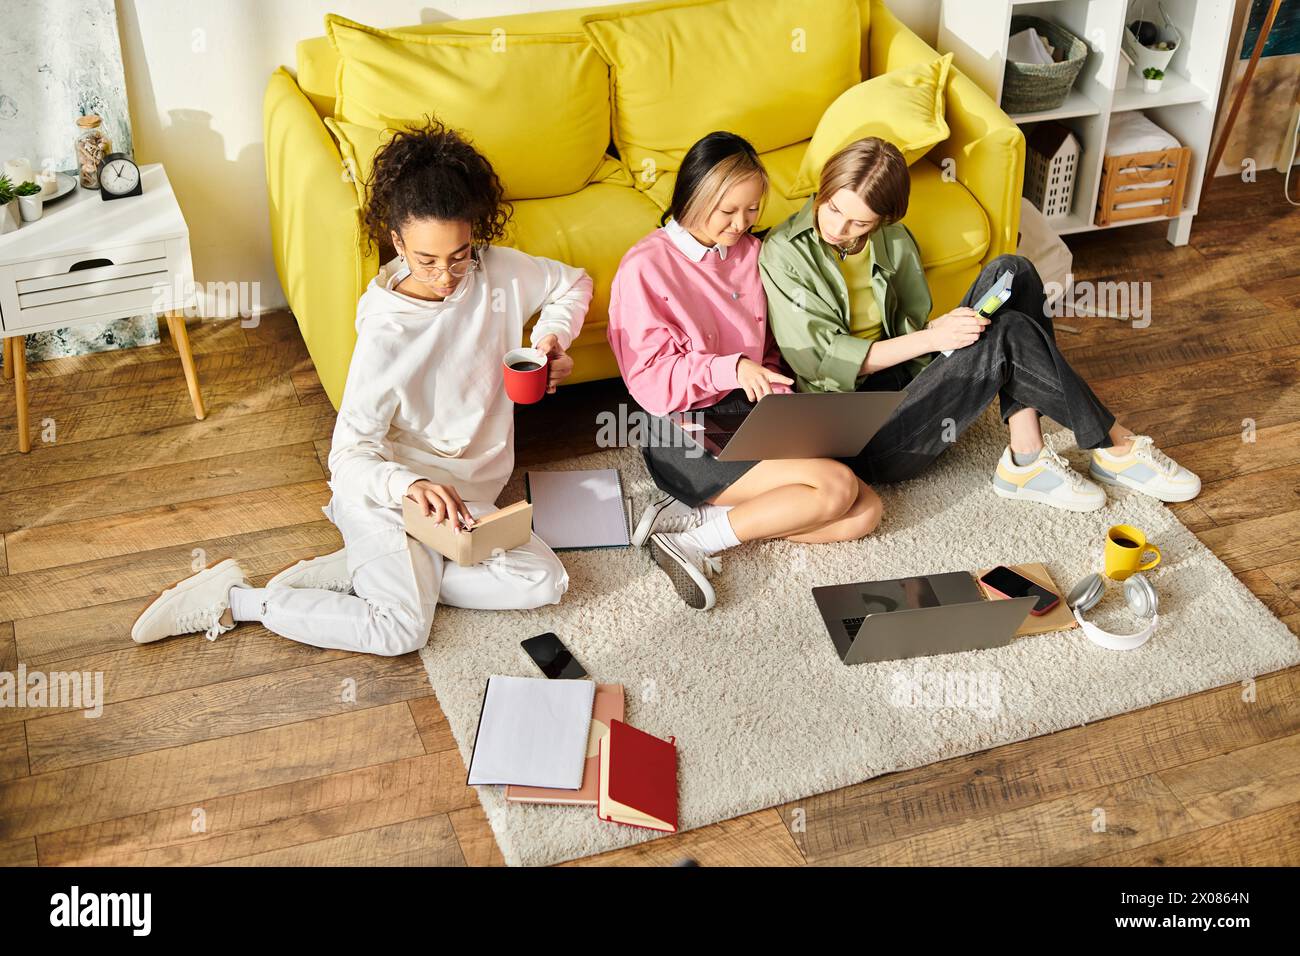 Drei verschiedene Teenager-Mädchen sitzen auf dem Boden vor einer gelben Couch, vertieft in das gemeinsame Lernen. Stockfoto